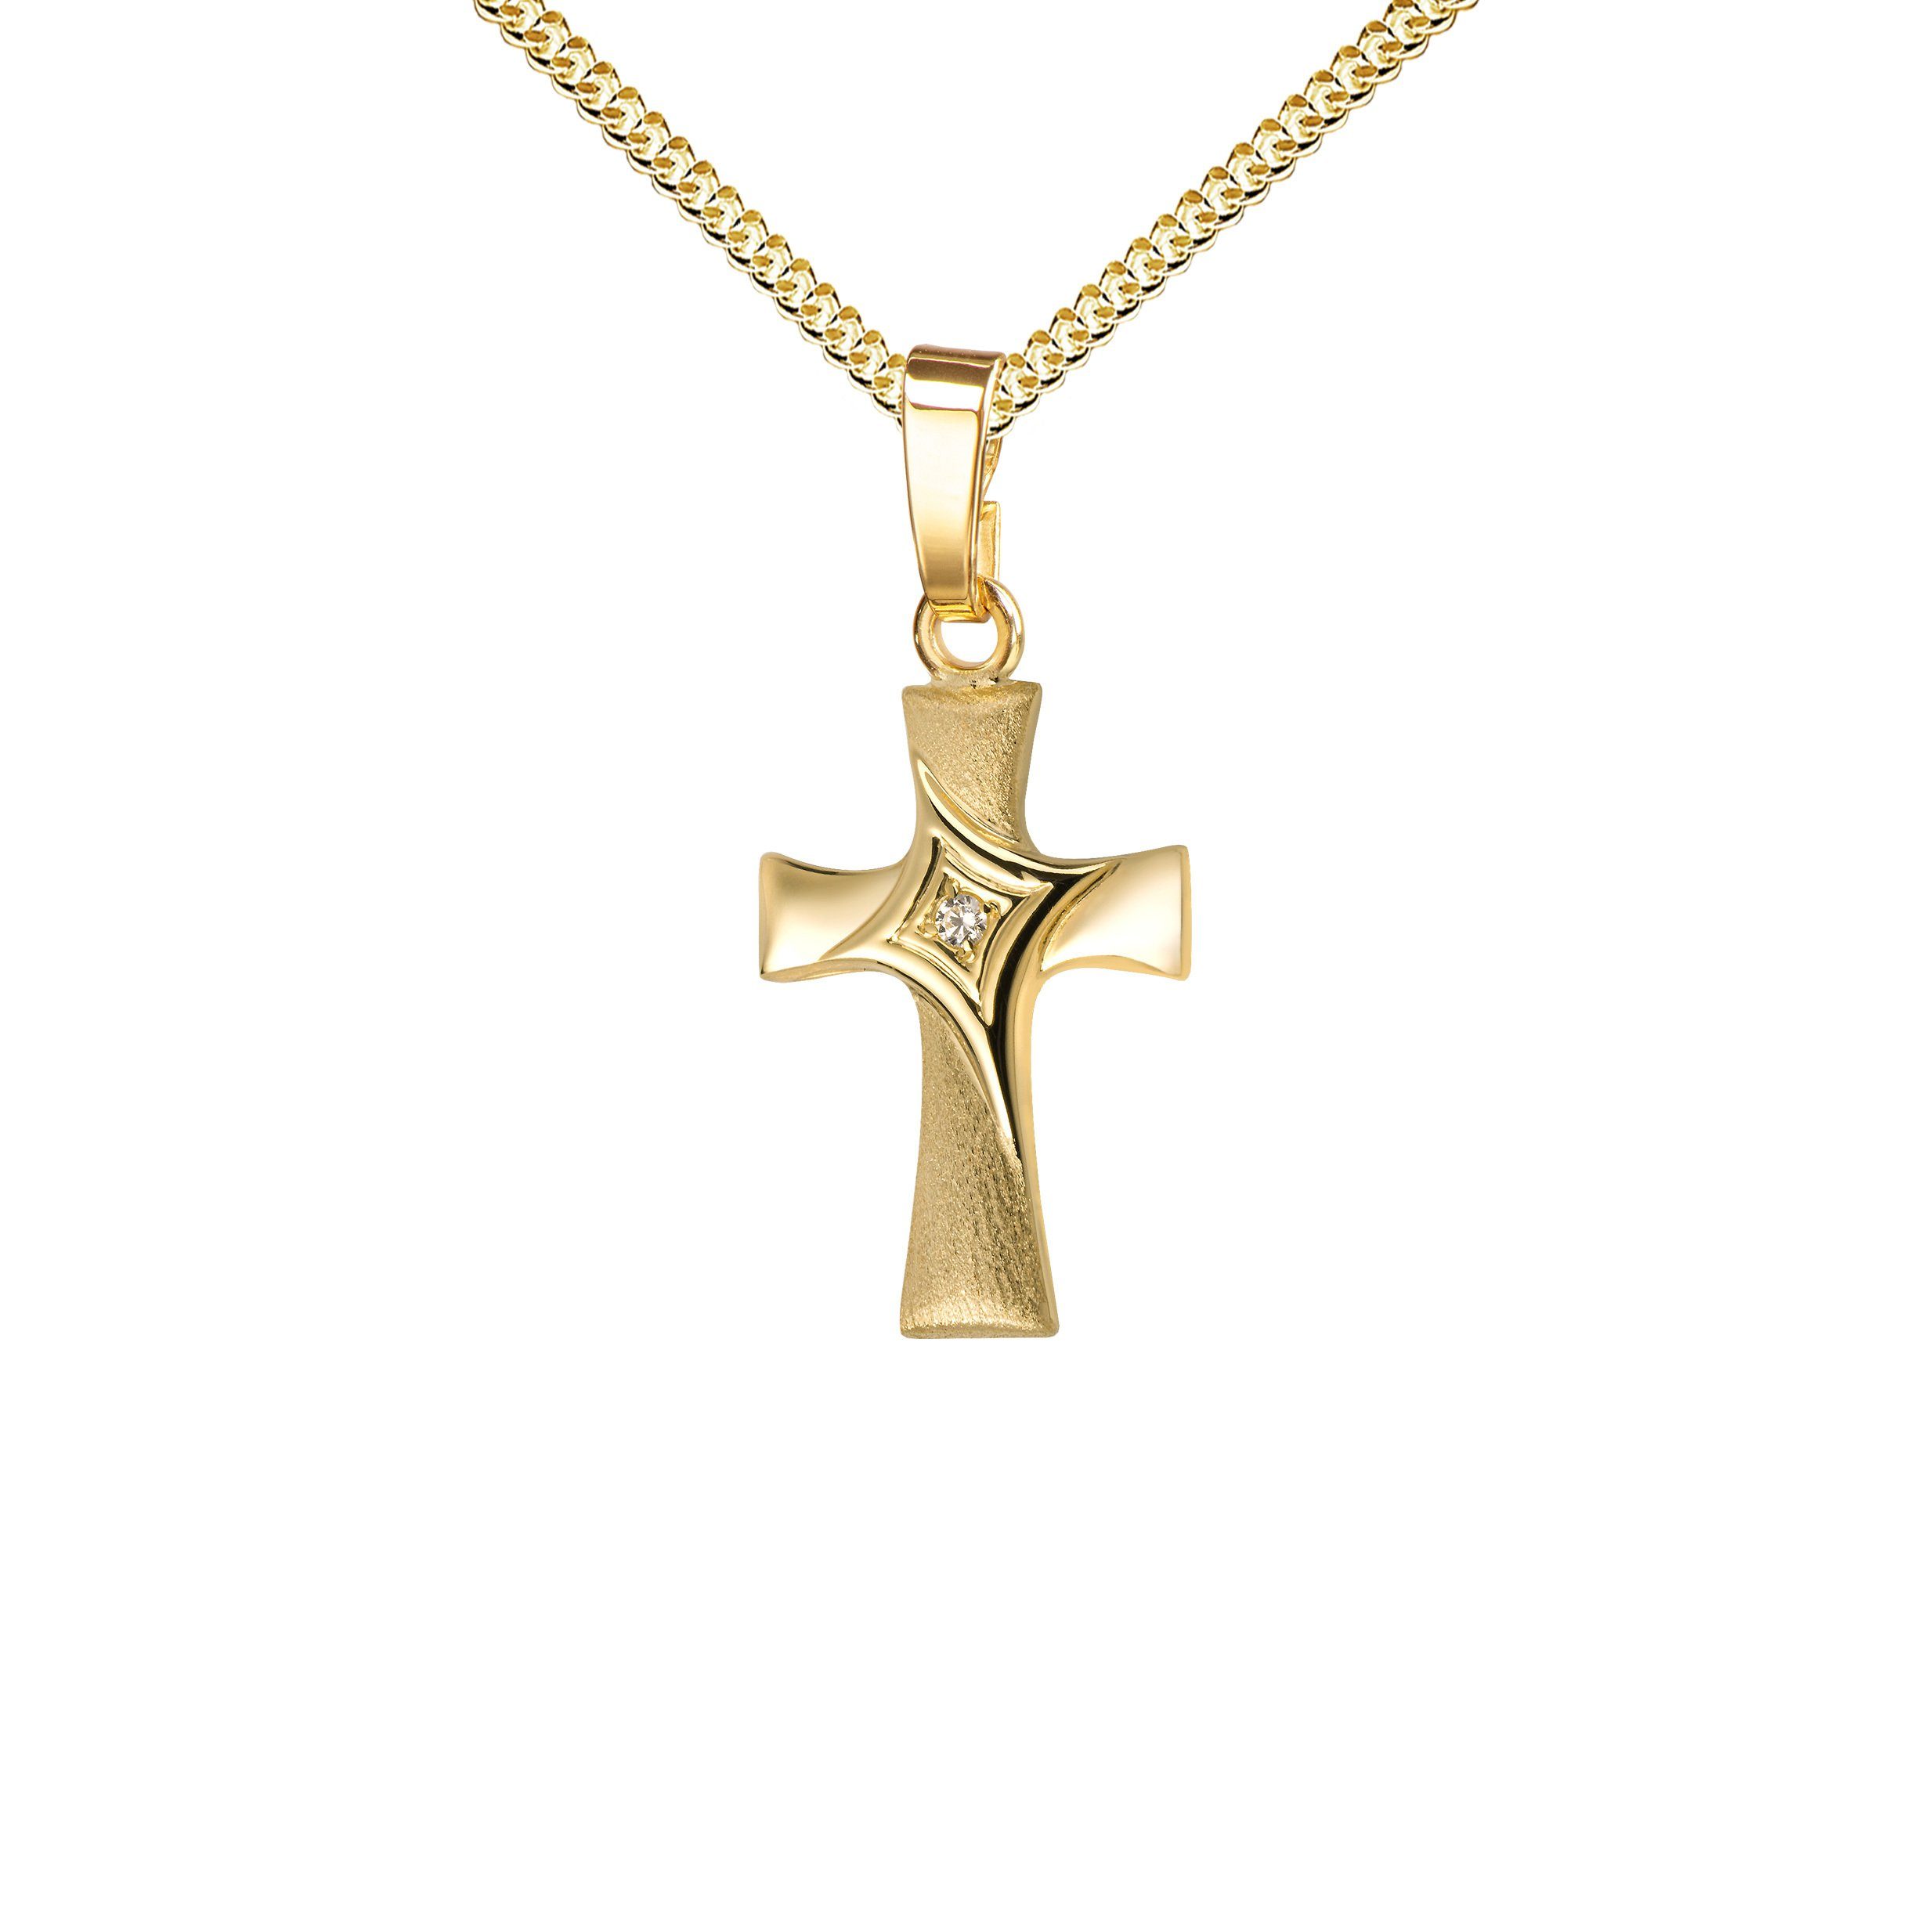 JEVELION Kreuzkette kleiner Kreuzanhänger 333 Gold mit Zirkonia - Made in Germany (Goldkreuz, für Damen und Kinder), Mit Kette vergoldet- Länge wählbar 36 - 70 cm oder ohne Kette.